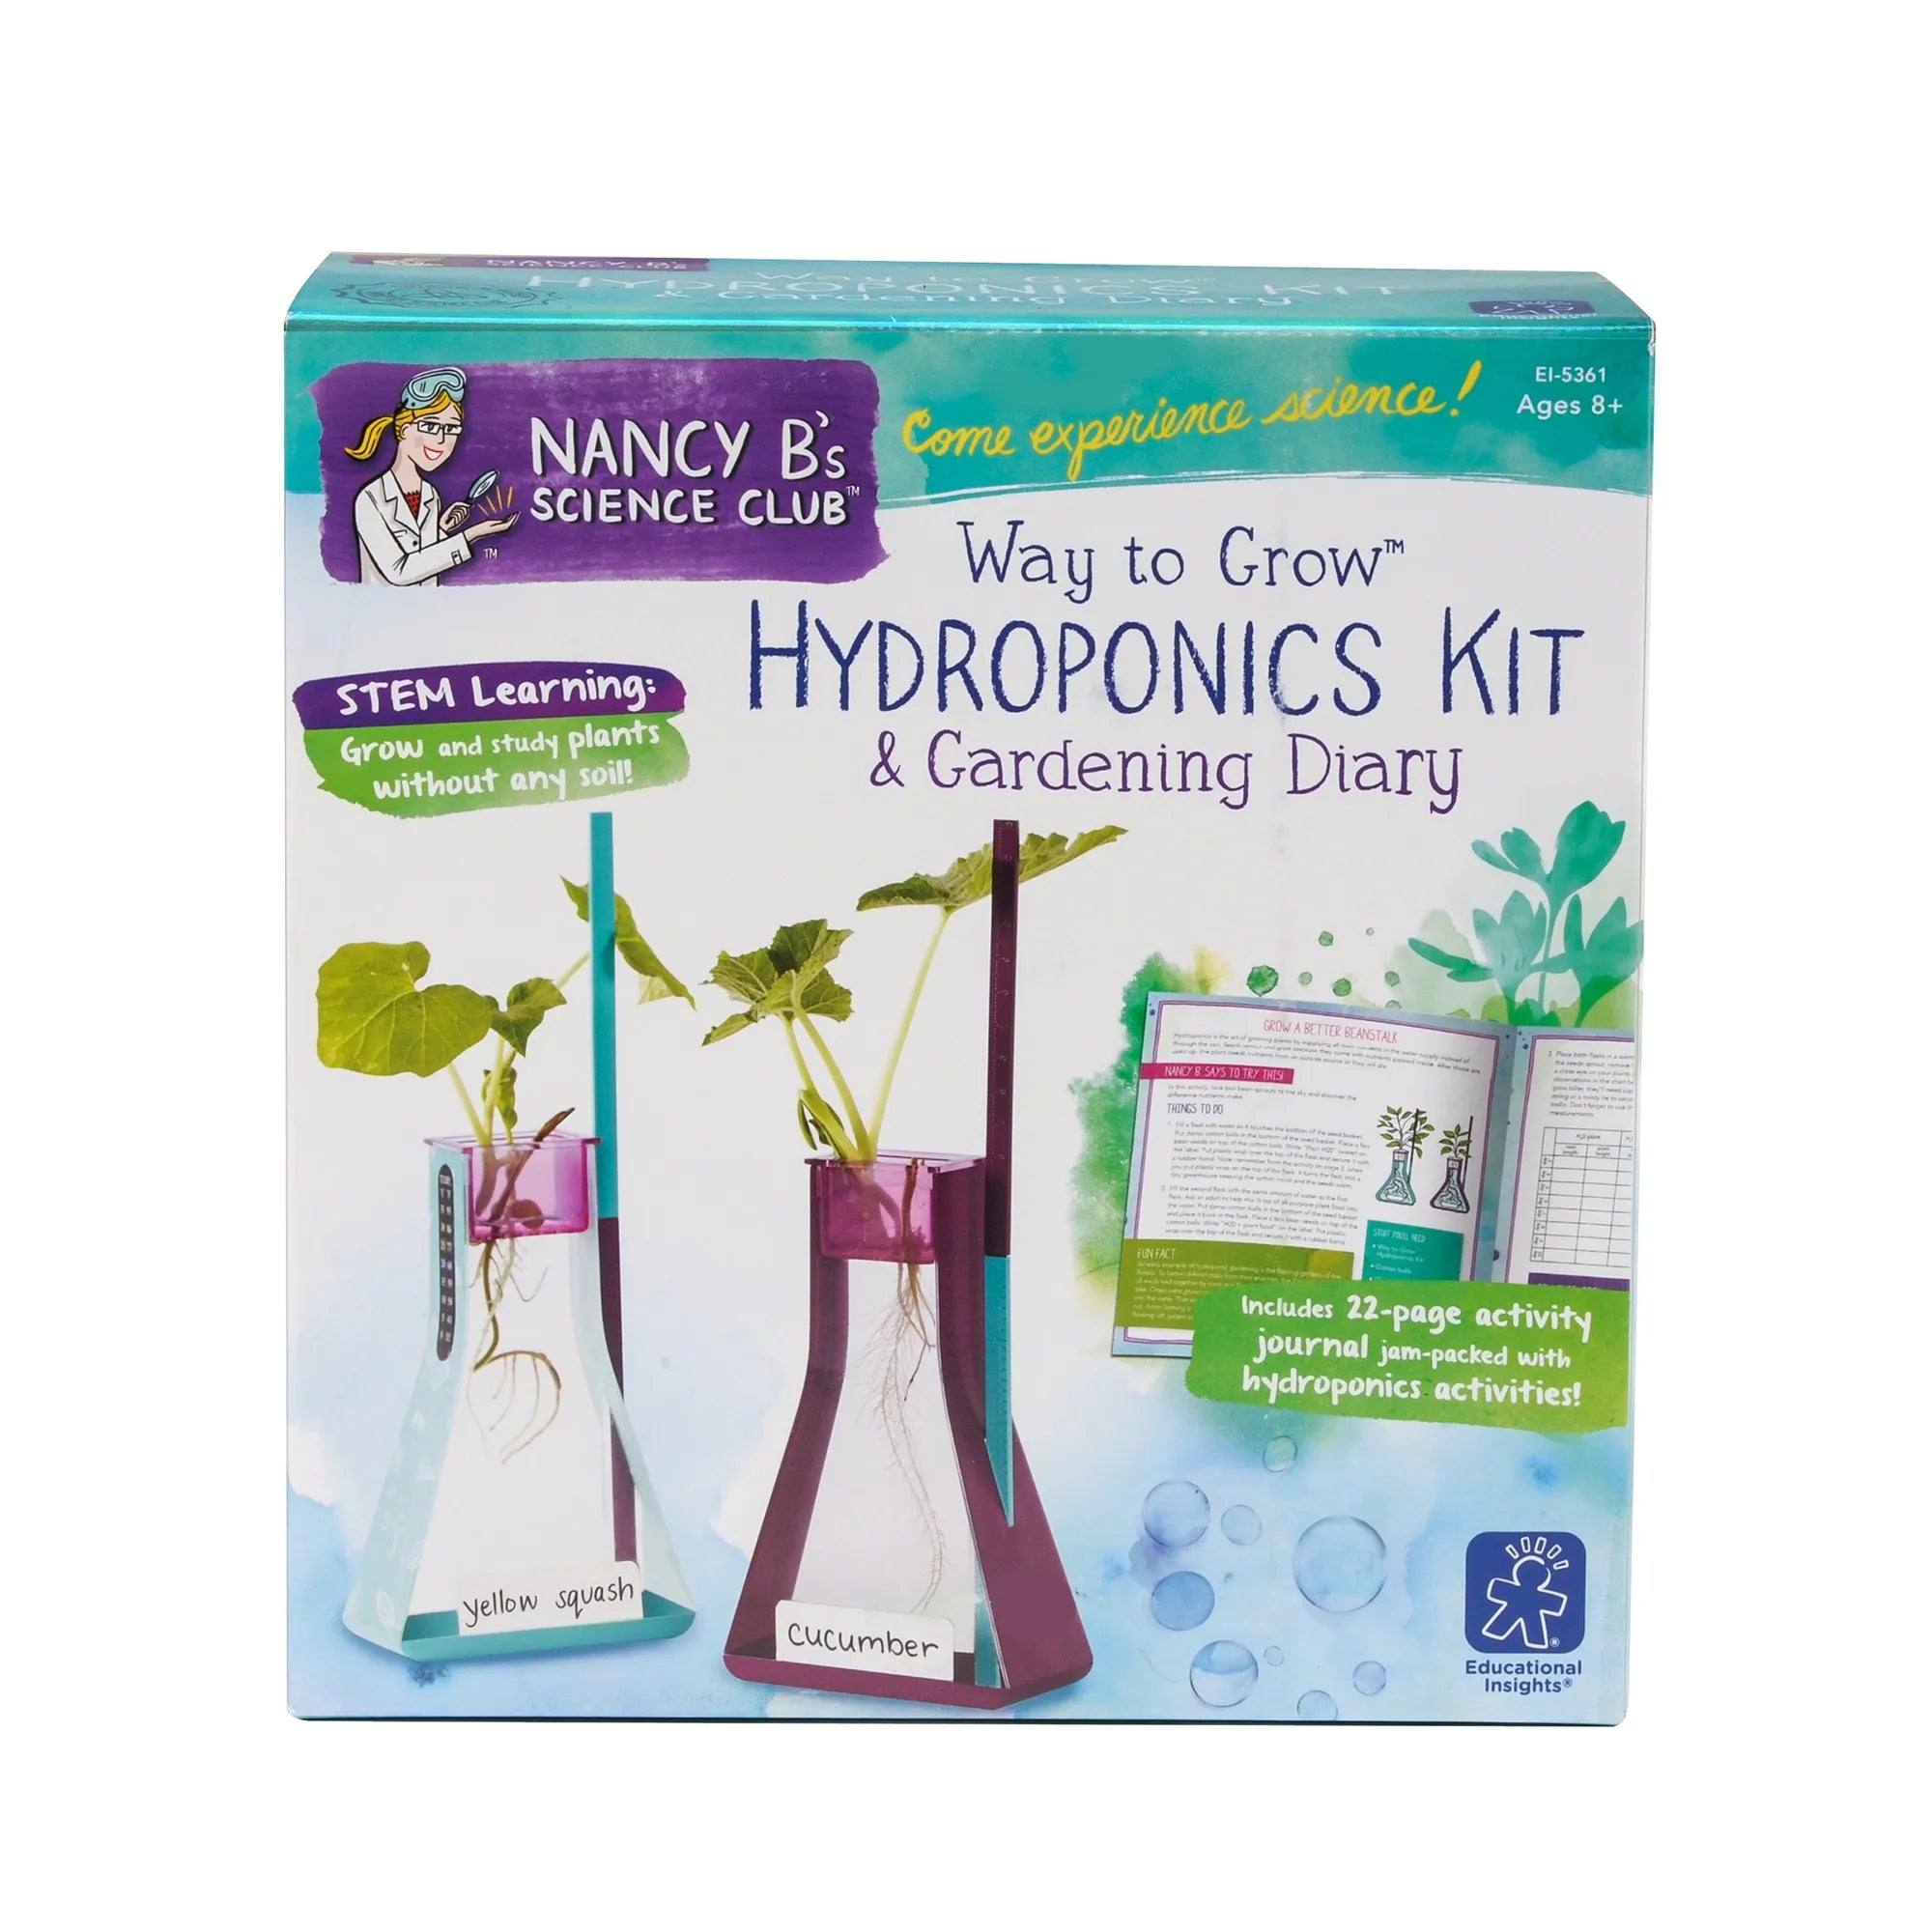 Nancy B's Science Club® Way to Grow Hydroponics